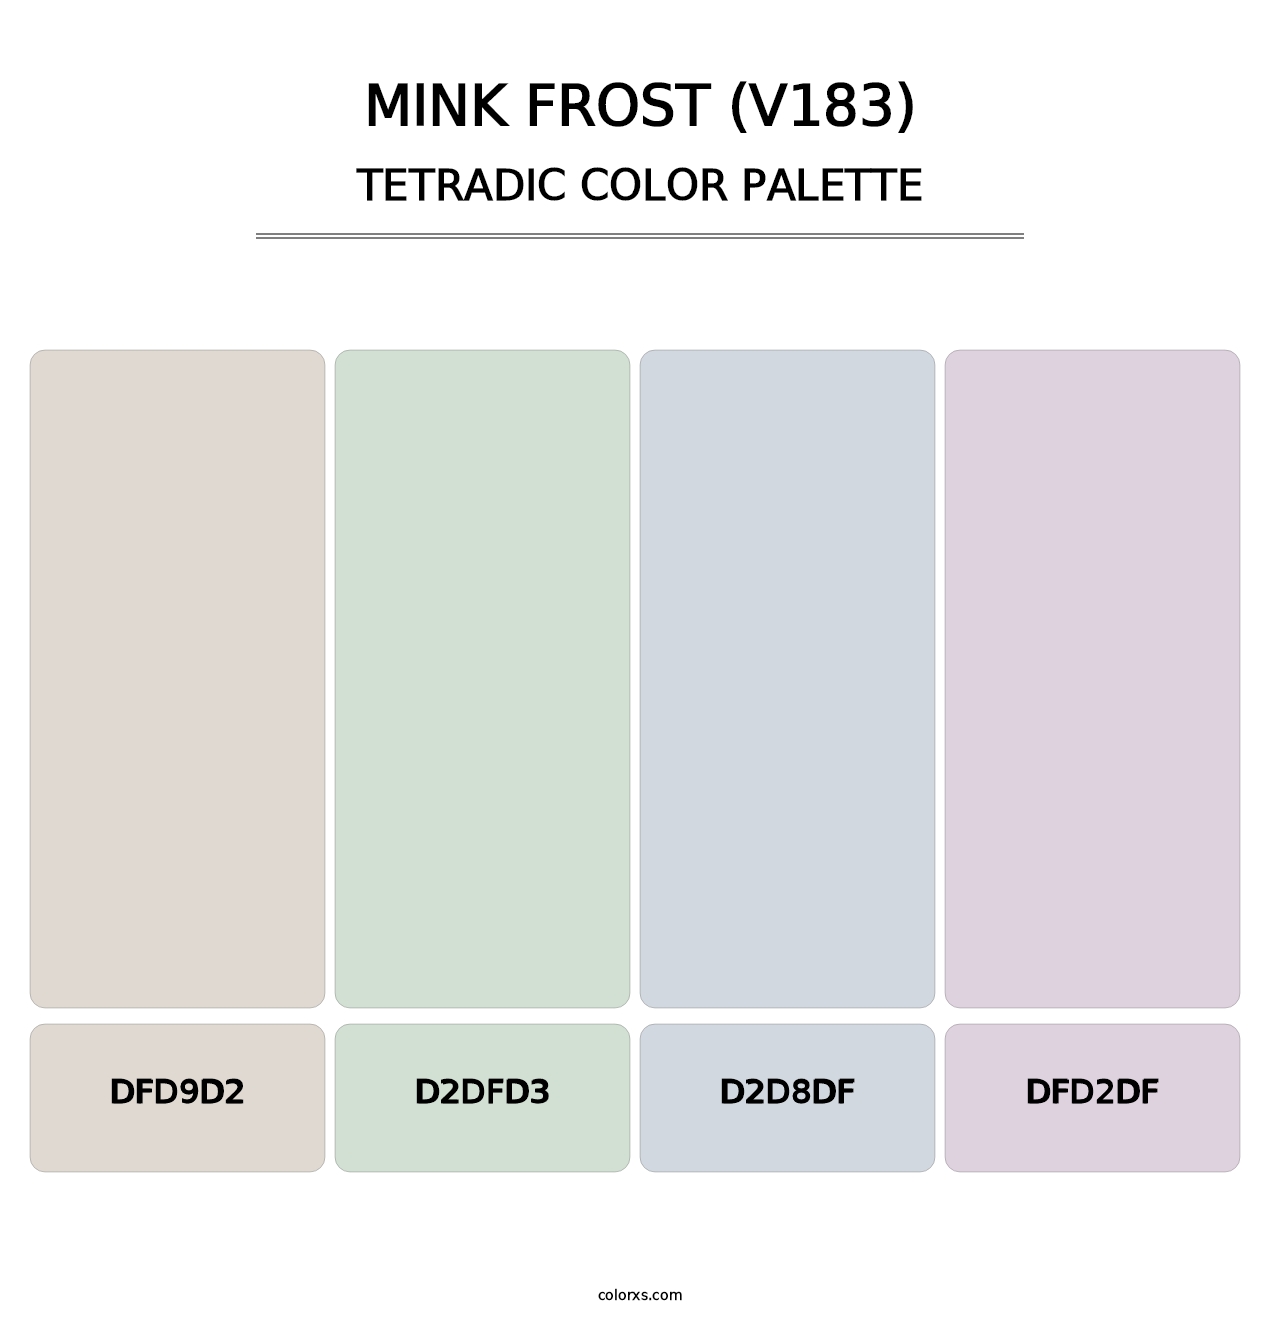 Mink Frost (V183) - Tetradic Color Palette